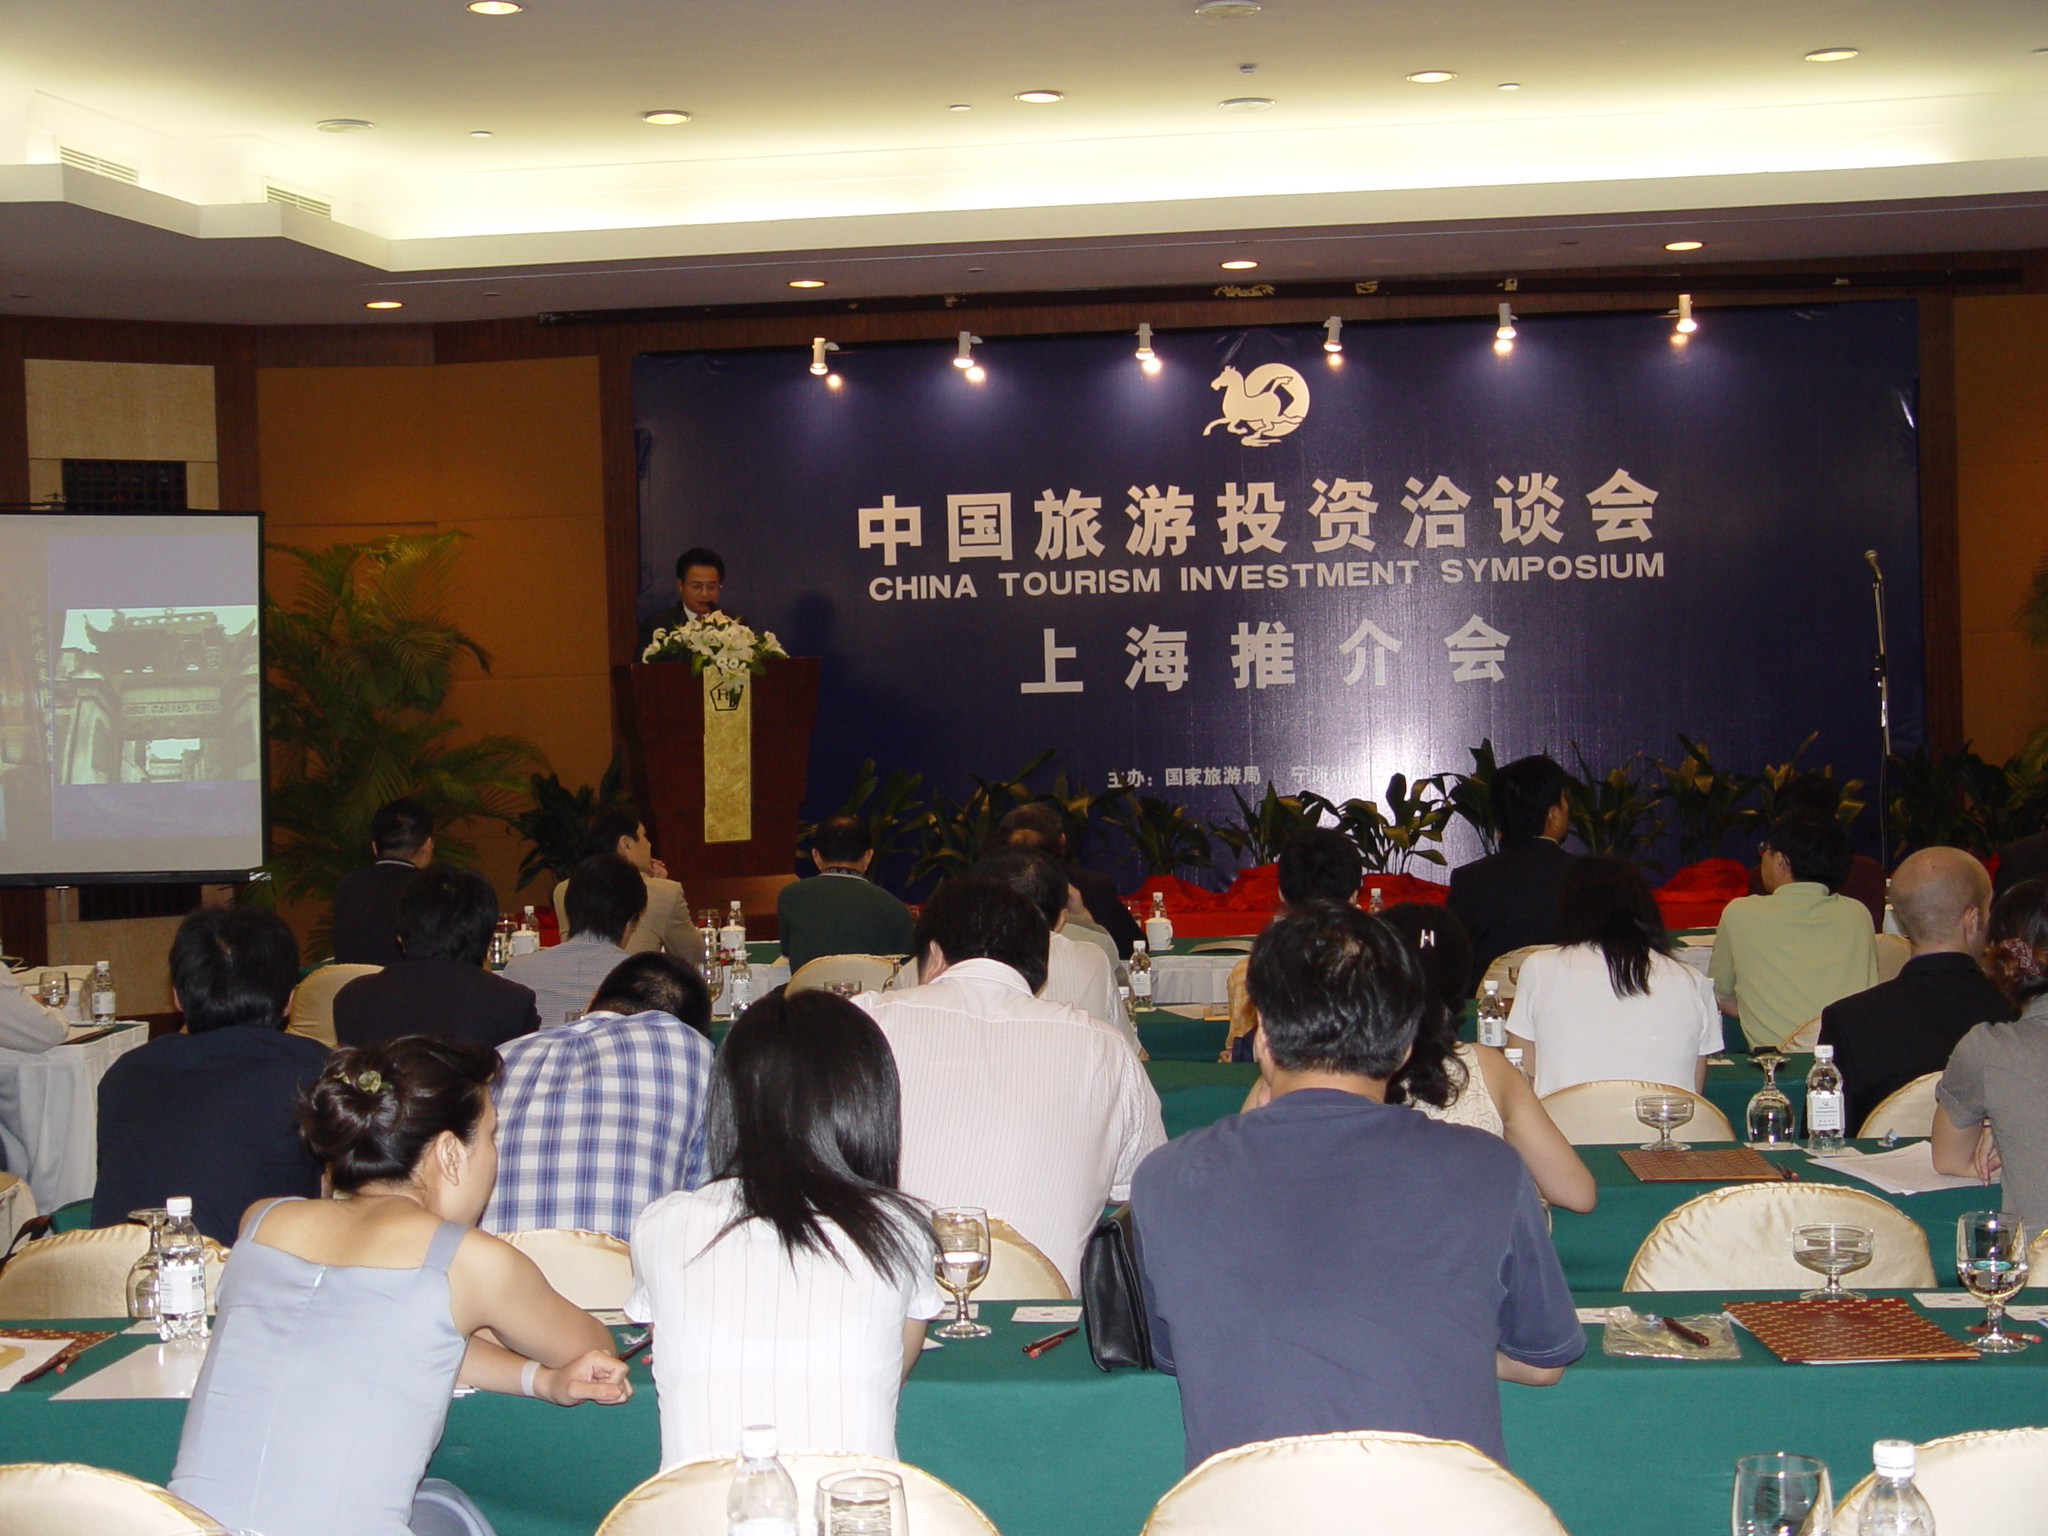 旺德富為中國旅遊投資洽談會提供英語同